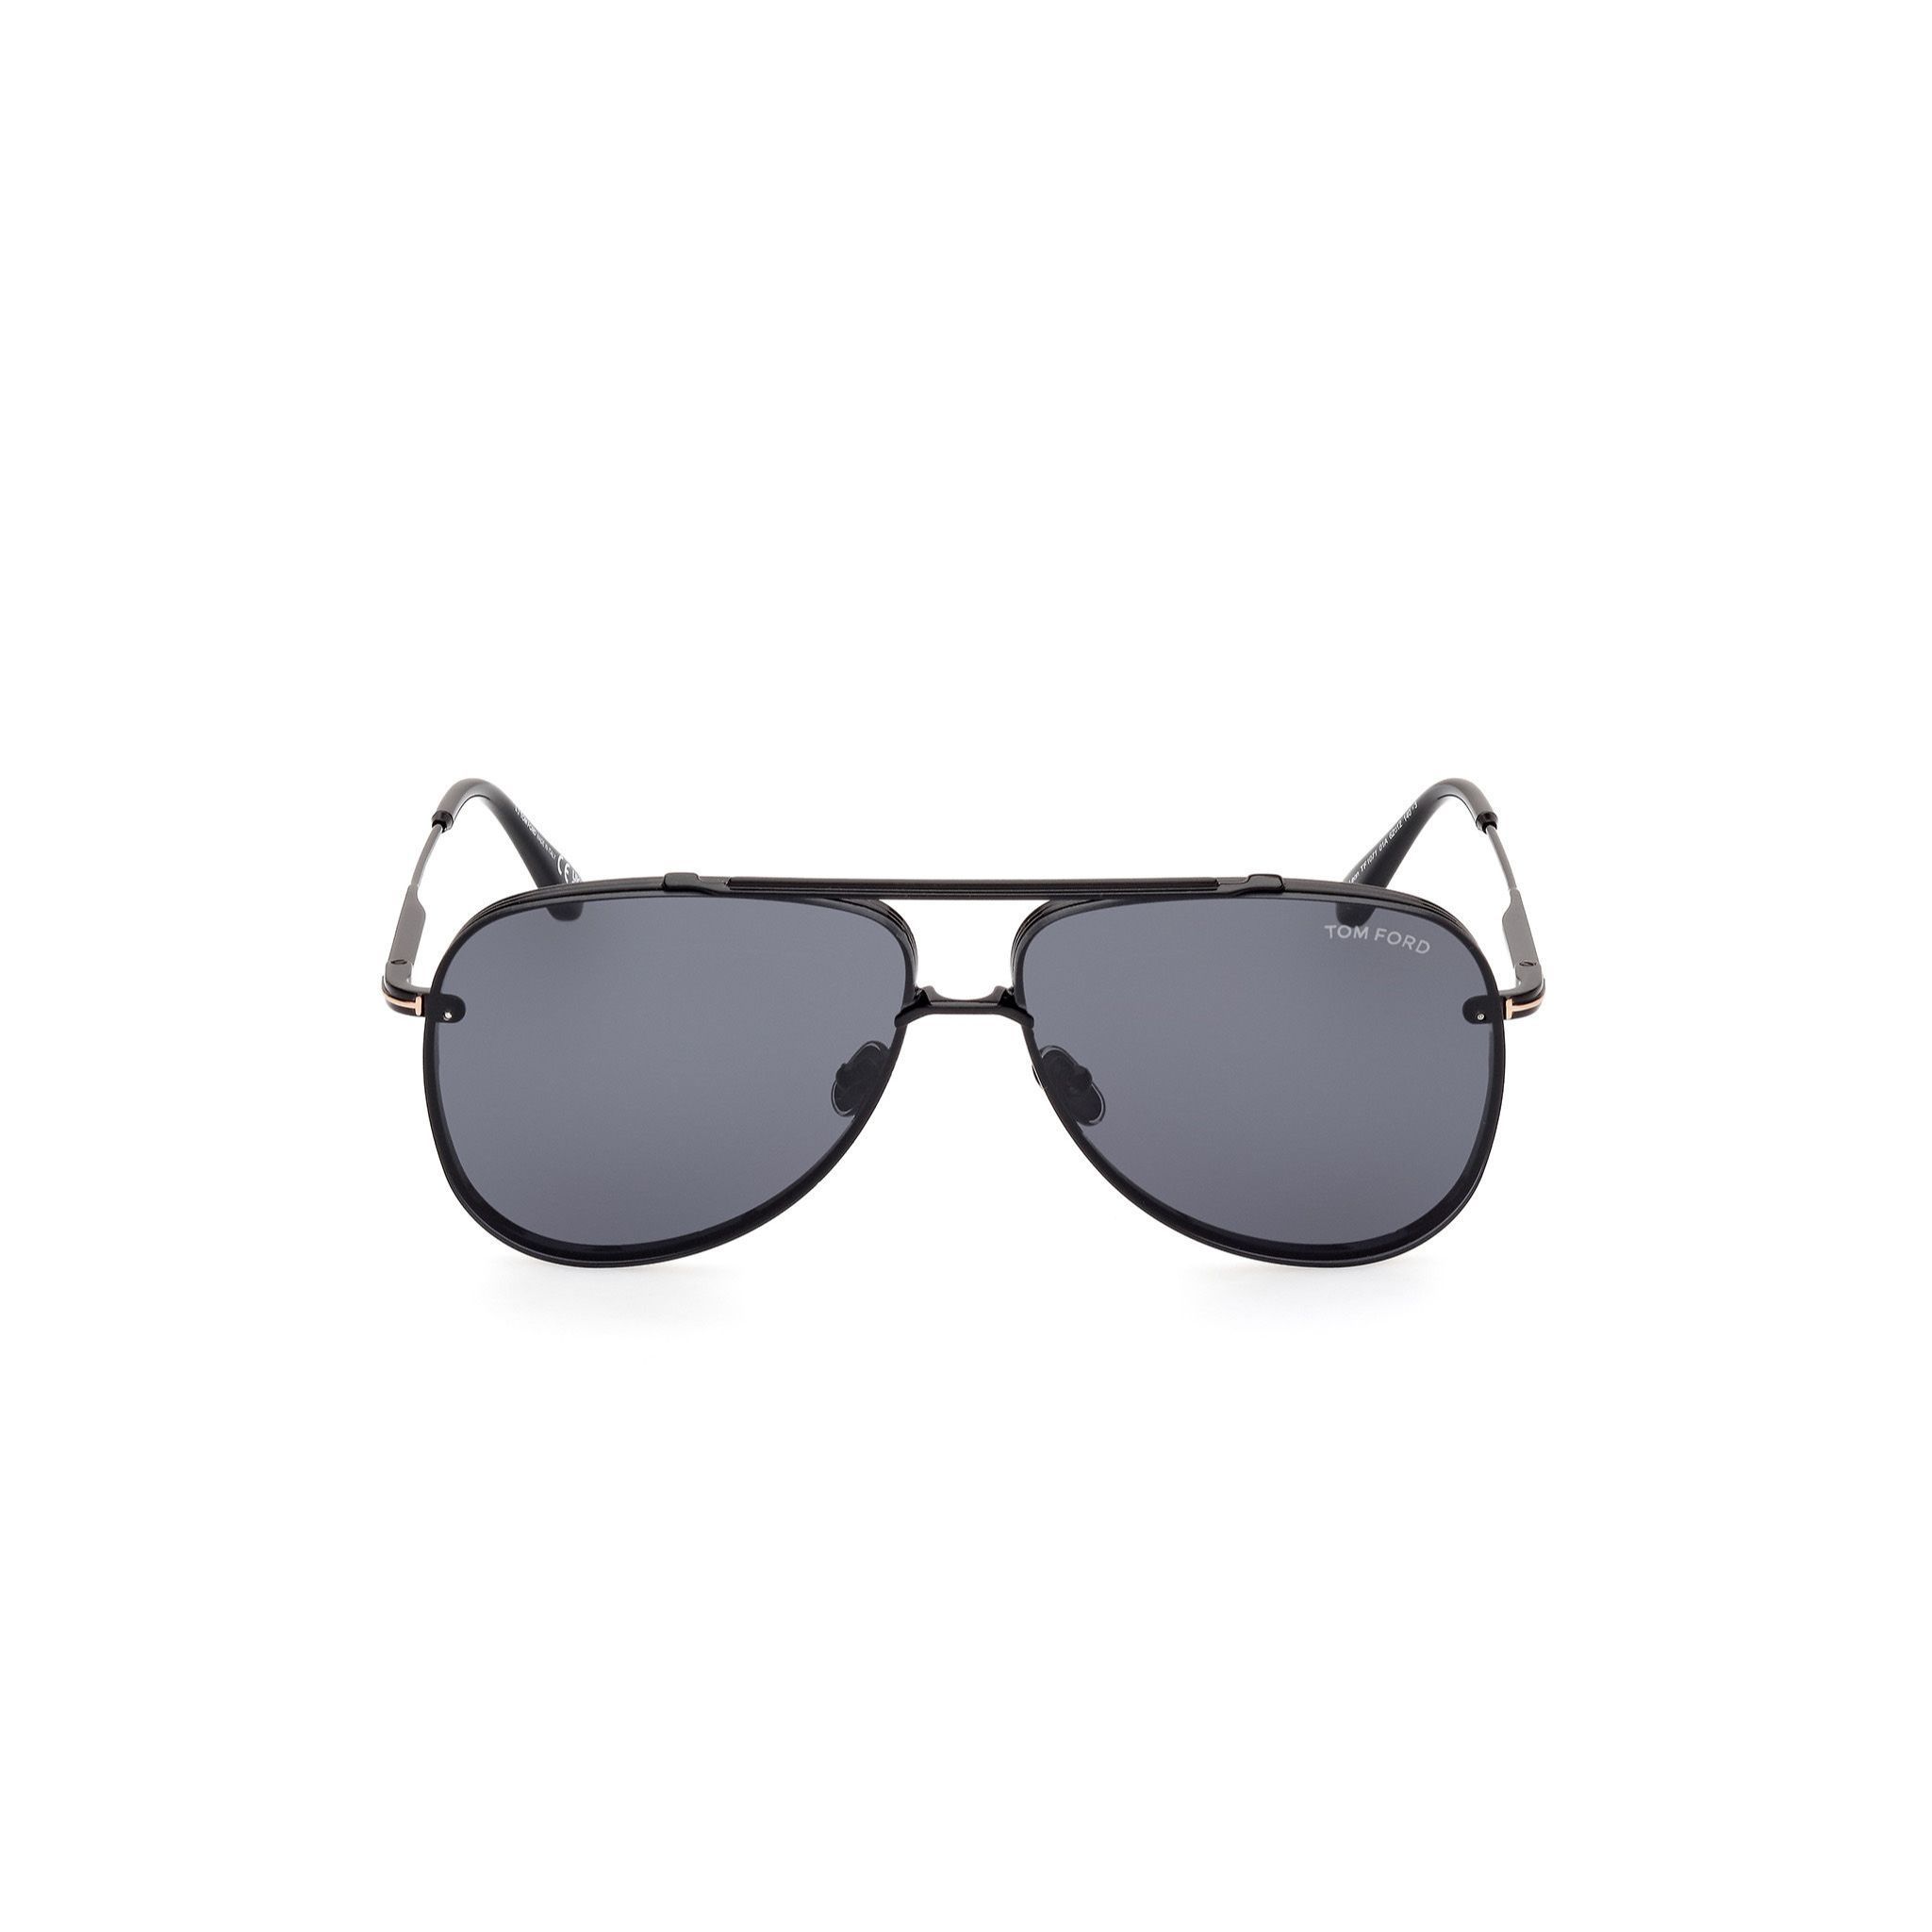 Men's Polarized Aviator Sunglasses Large Size | Optic One UAE